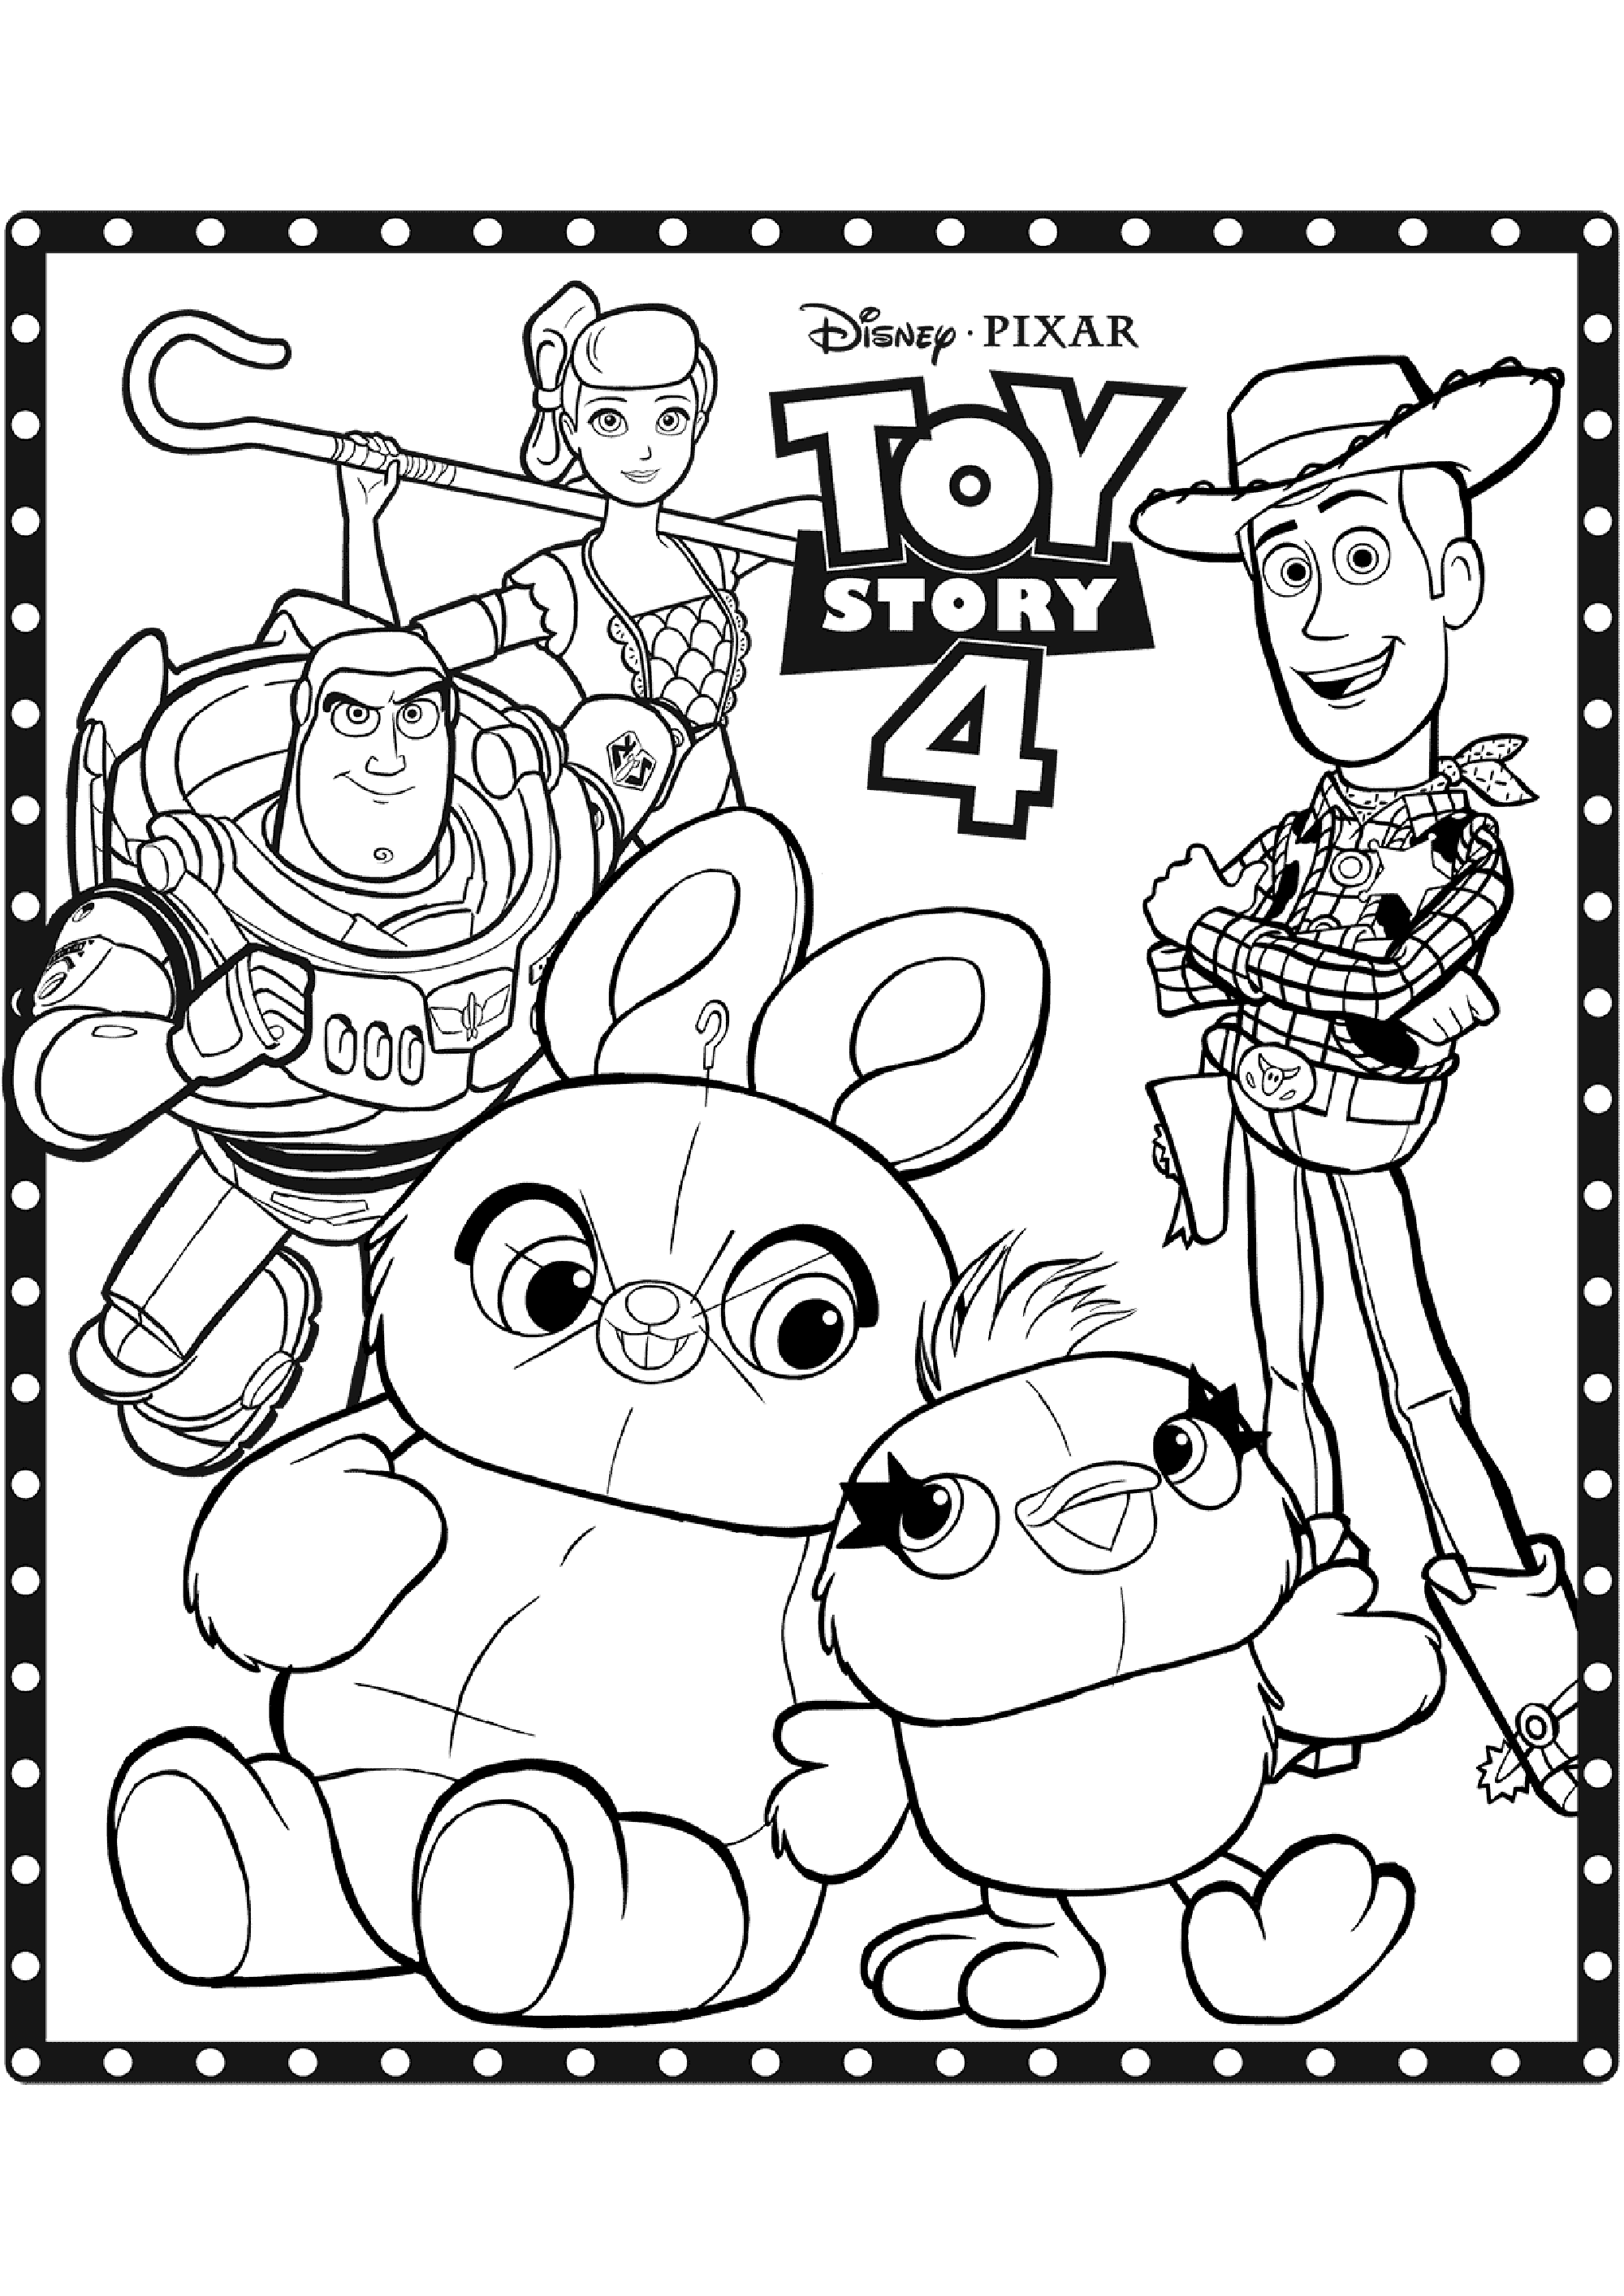 Desenho do Toy Story 4 para descarregar e imprimir para crianças : Vários personagens